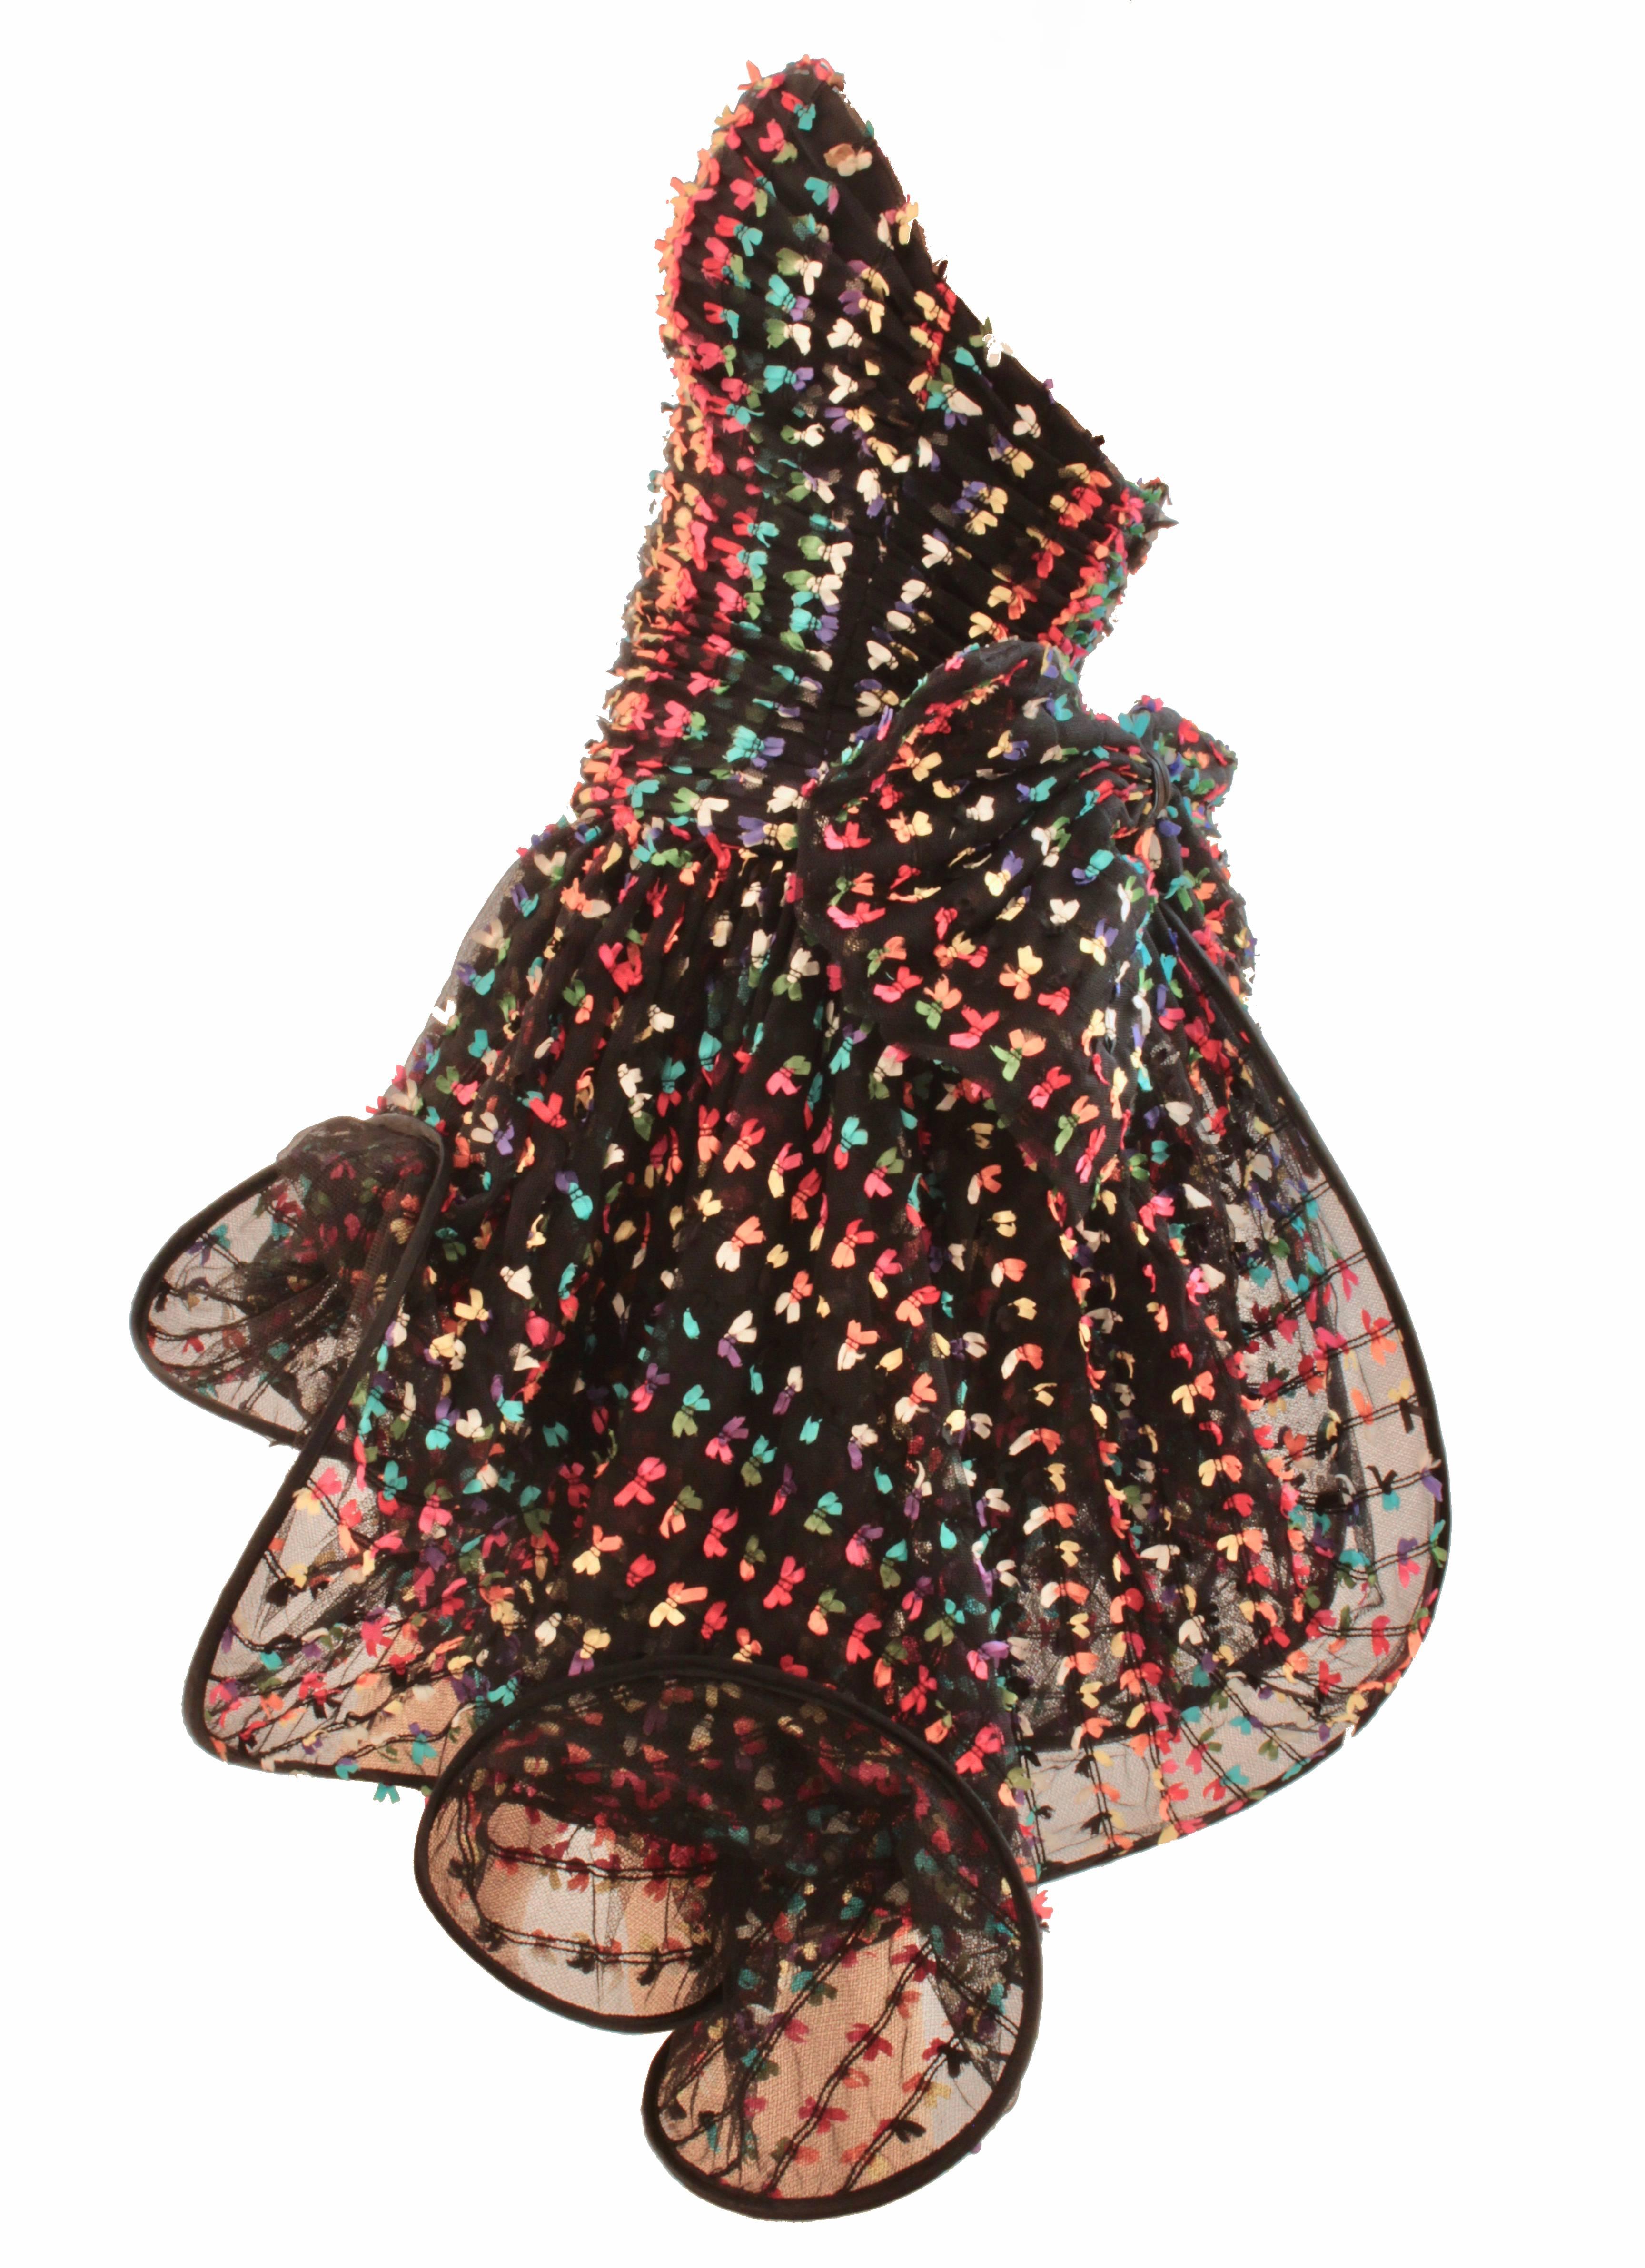 Unique Confetti Bow Cocktail Dress by Tomasz Starzewski Bergdorf Goodman 6 90s 1